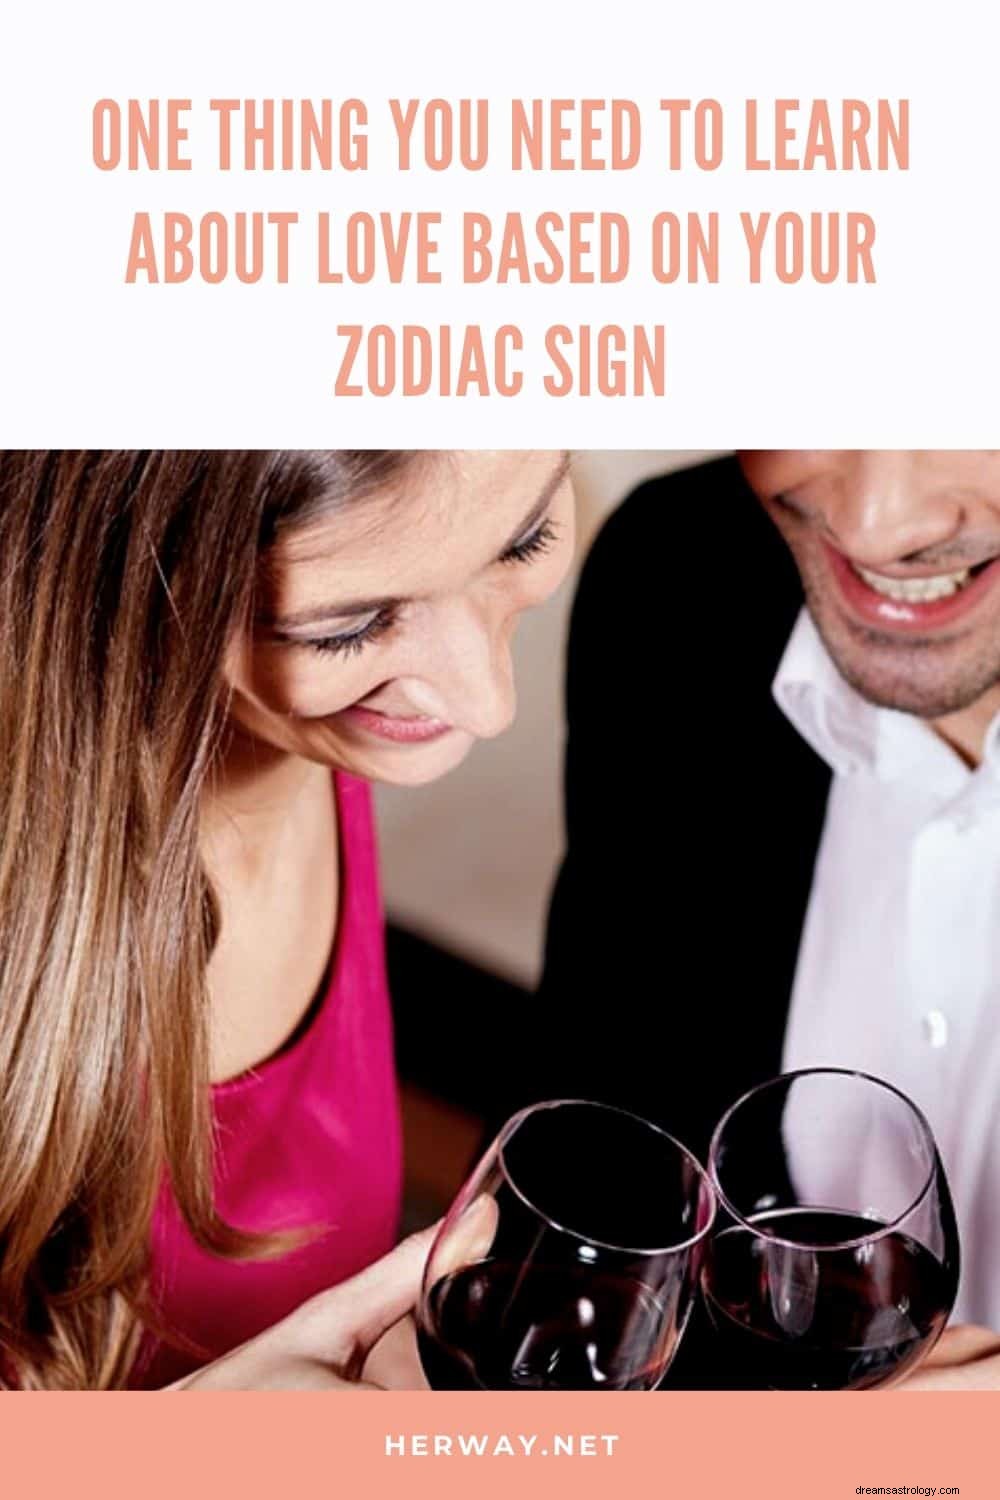 Uma coisa que você precisa aprender sobre o amor com base no seu signo do zodíaco